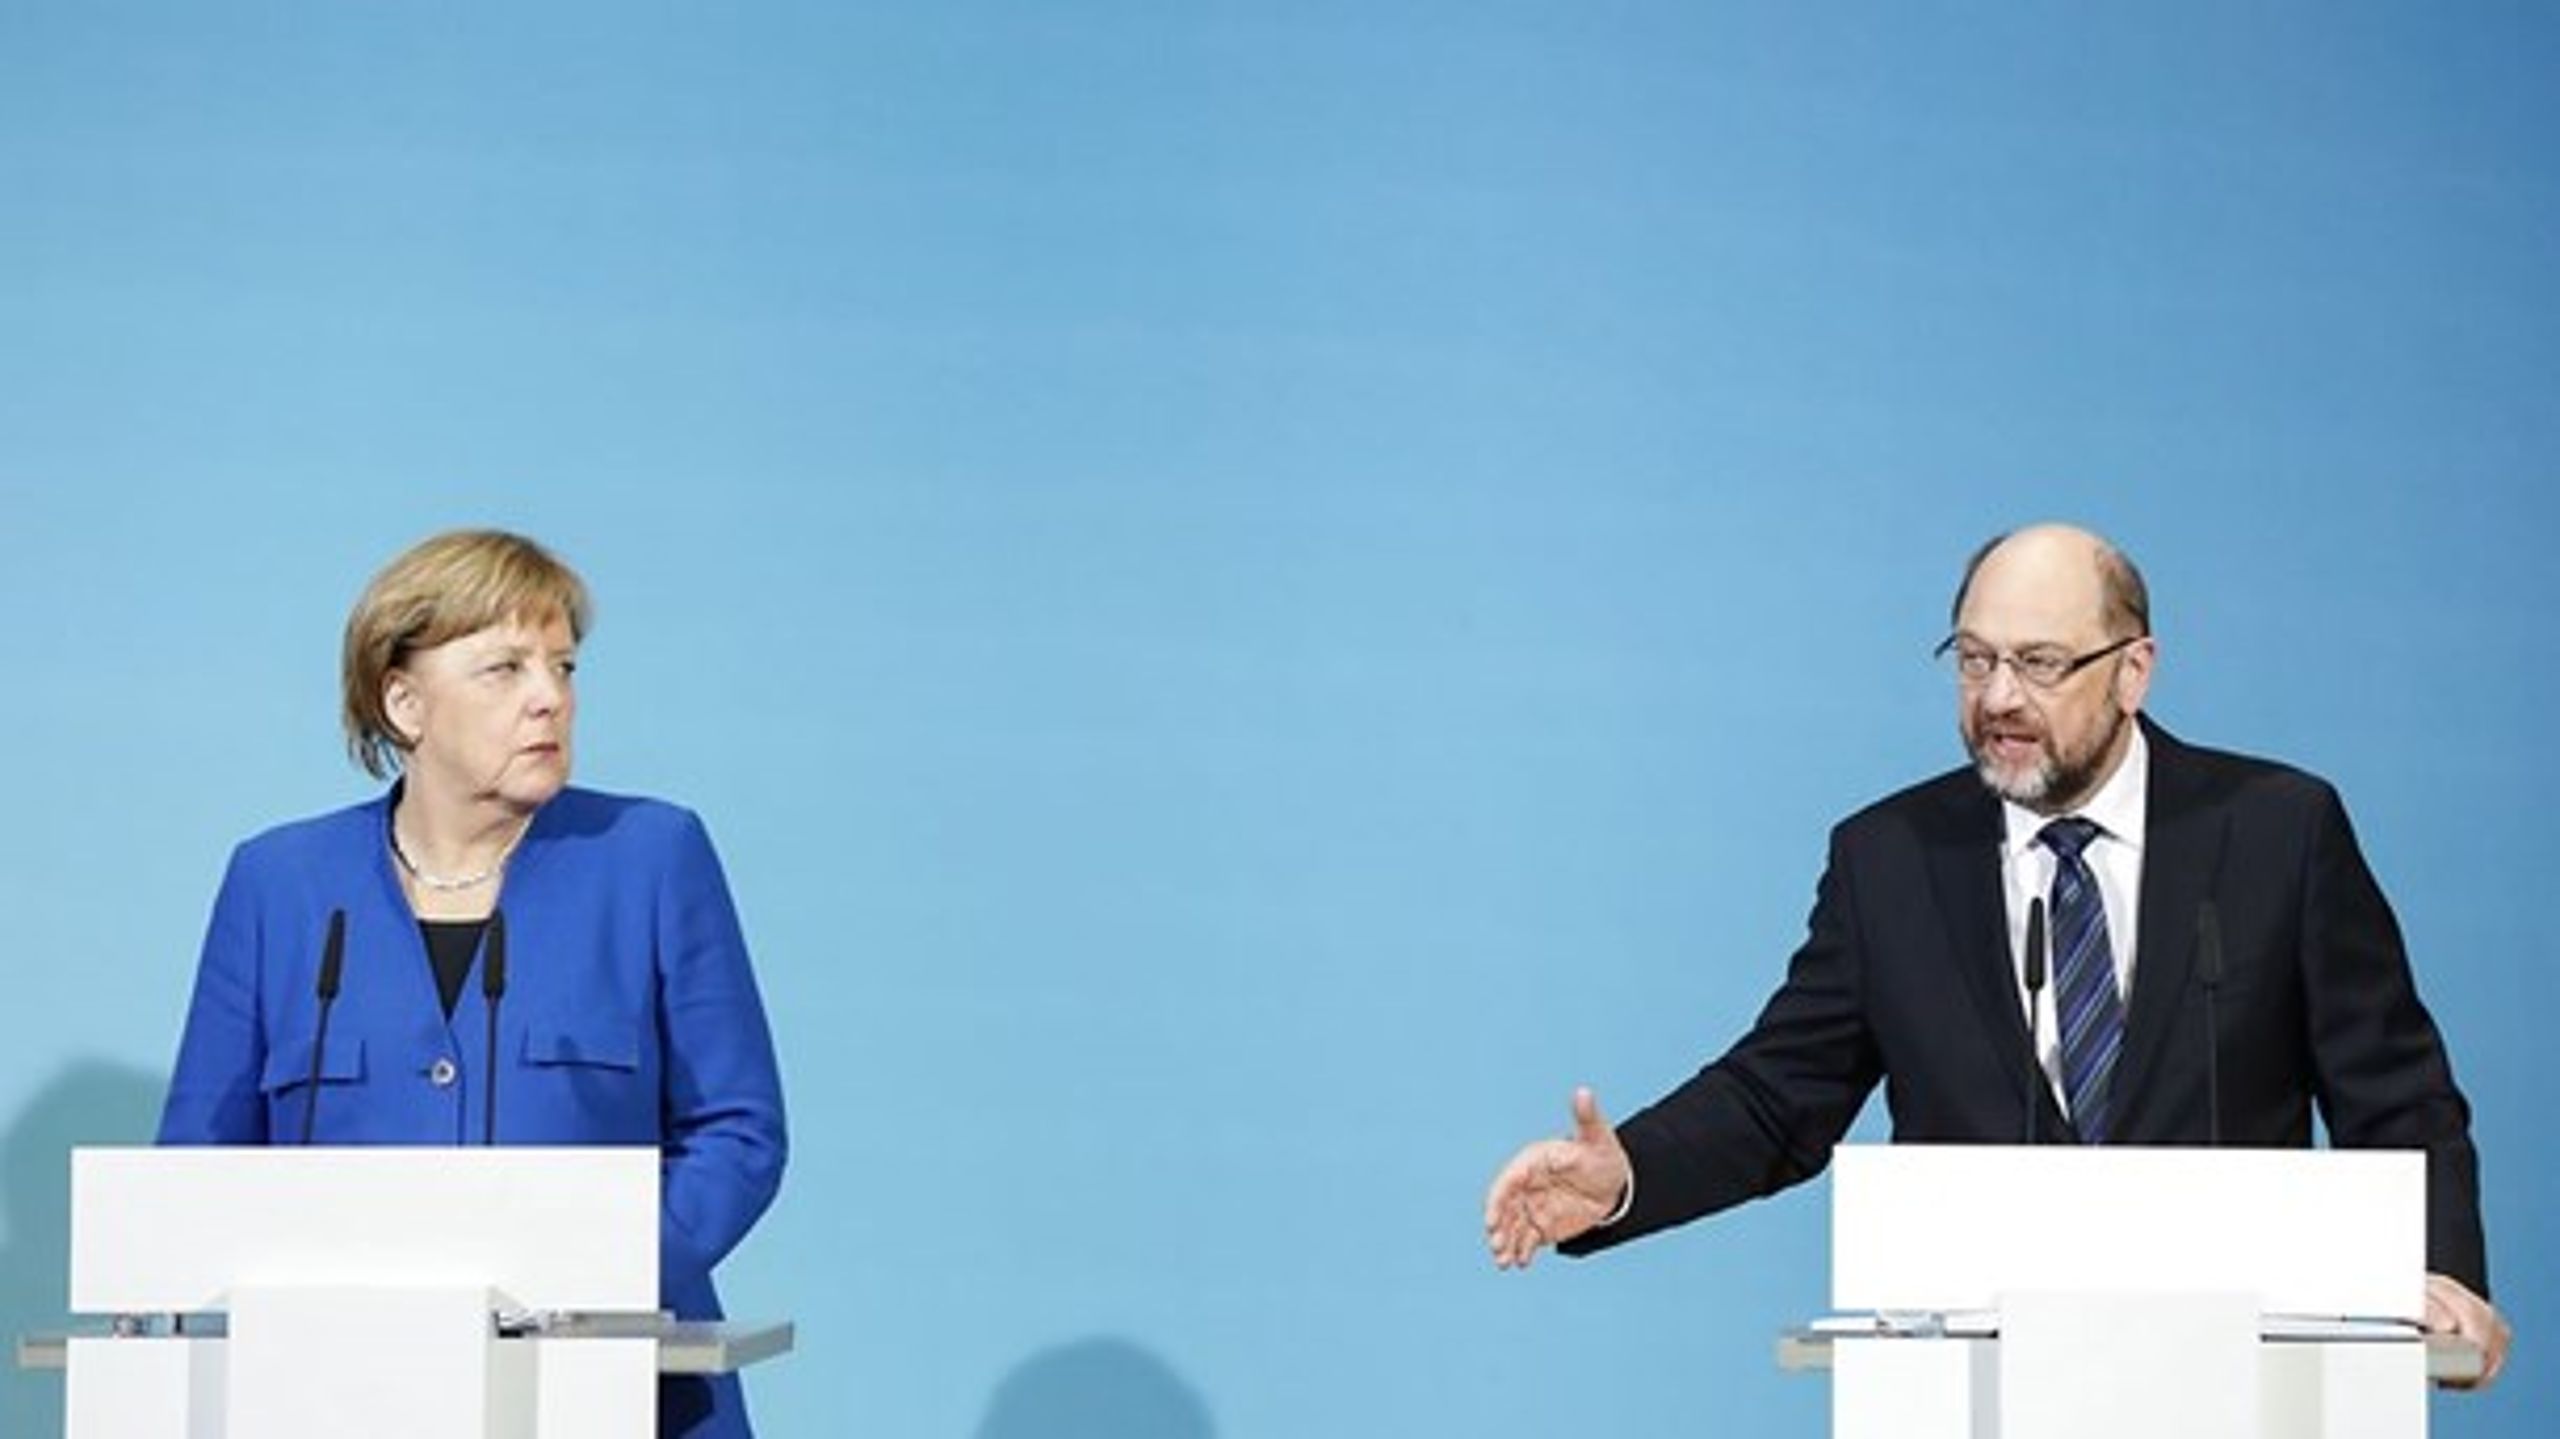 De står stadig langt fra hinanden, den tyske kansler, Angela Merkel, og SPD-leder Martin Schulz.